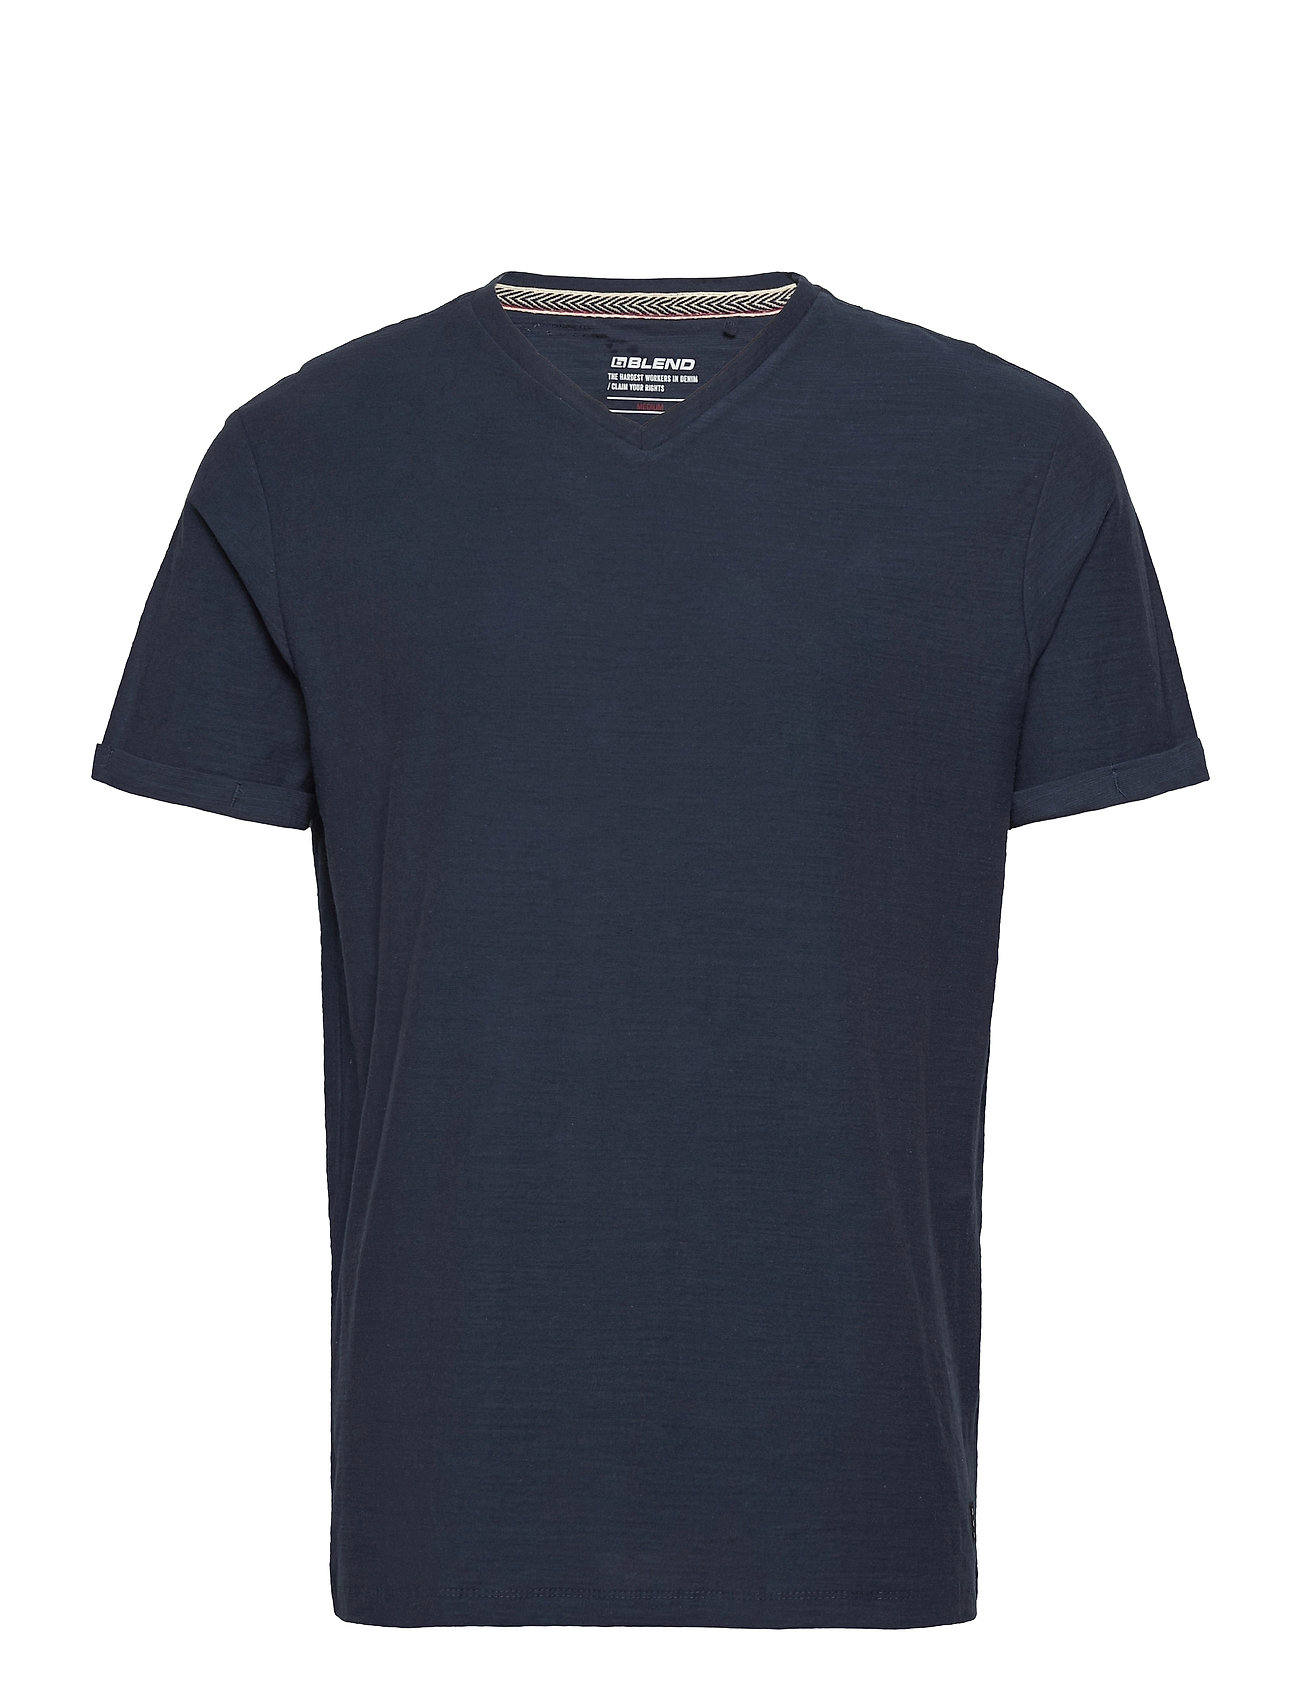 Tee T-shirts Short-sleeved Sininen Blend